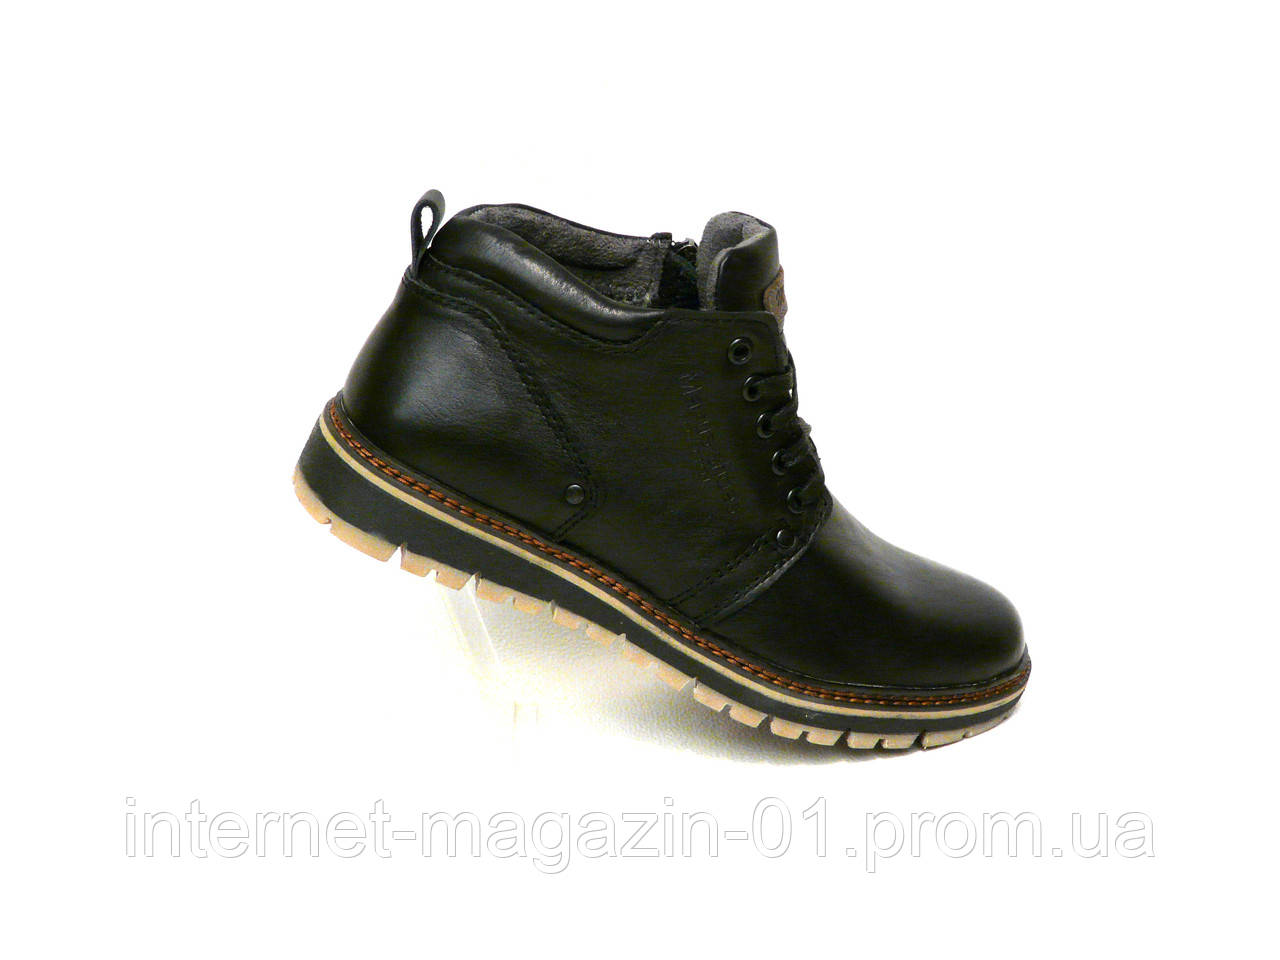 Зимові чоловічі шкіряні черевики Maxus. 40 розмір